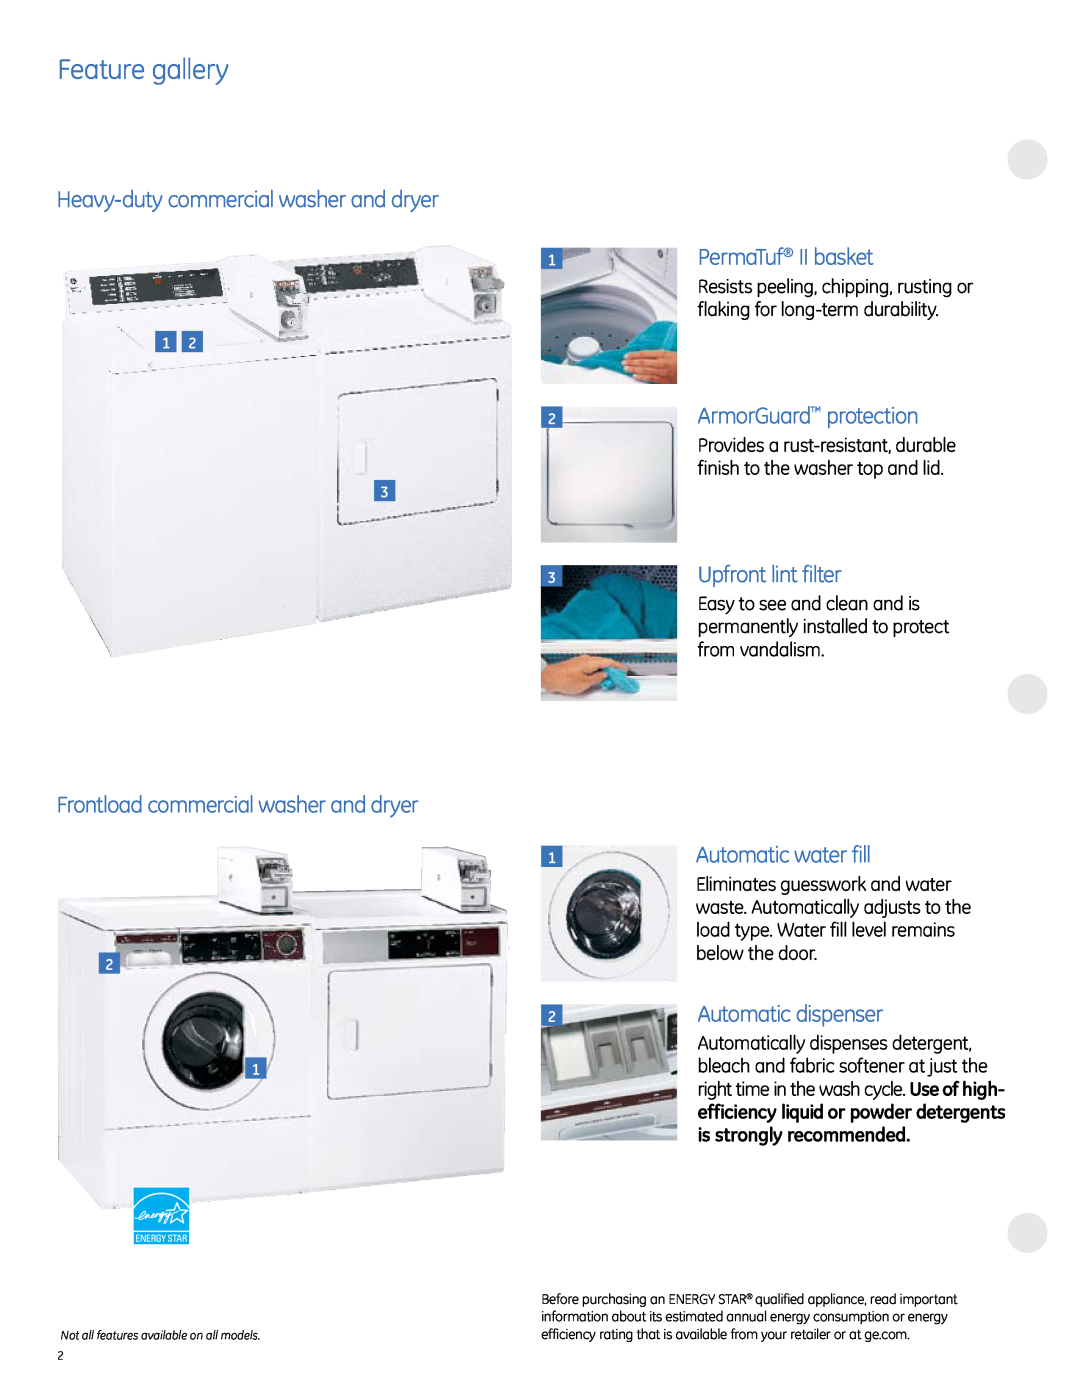 GE Feature gallery, Heavy-duty commercial washer and dryer, Frontload commercial washer and dryer, 1PermaTuf II basket 